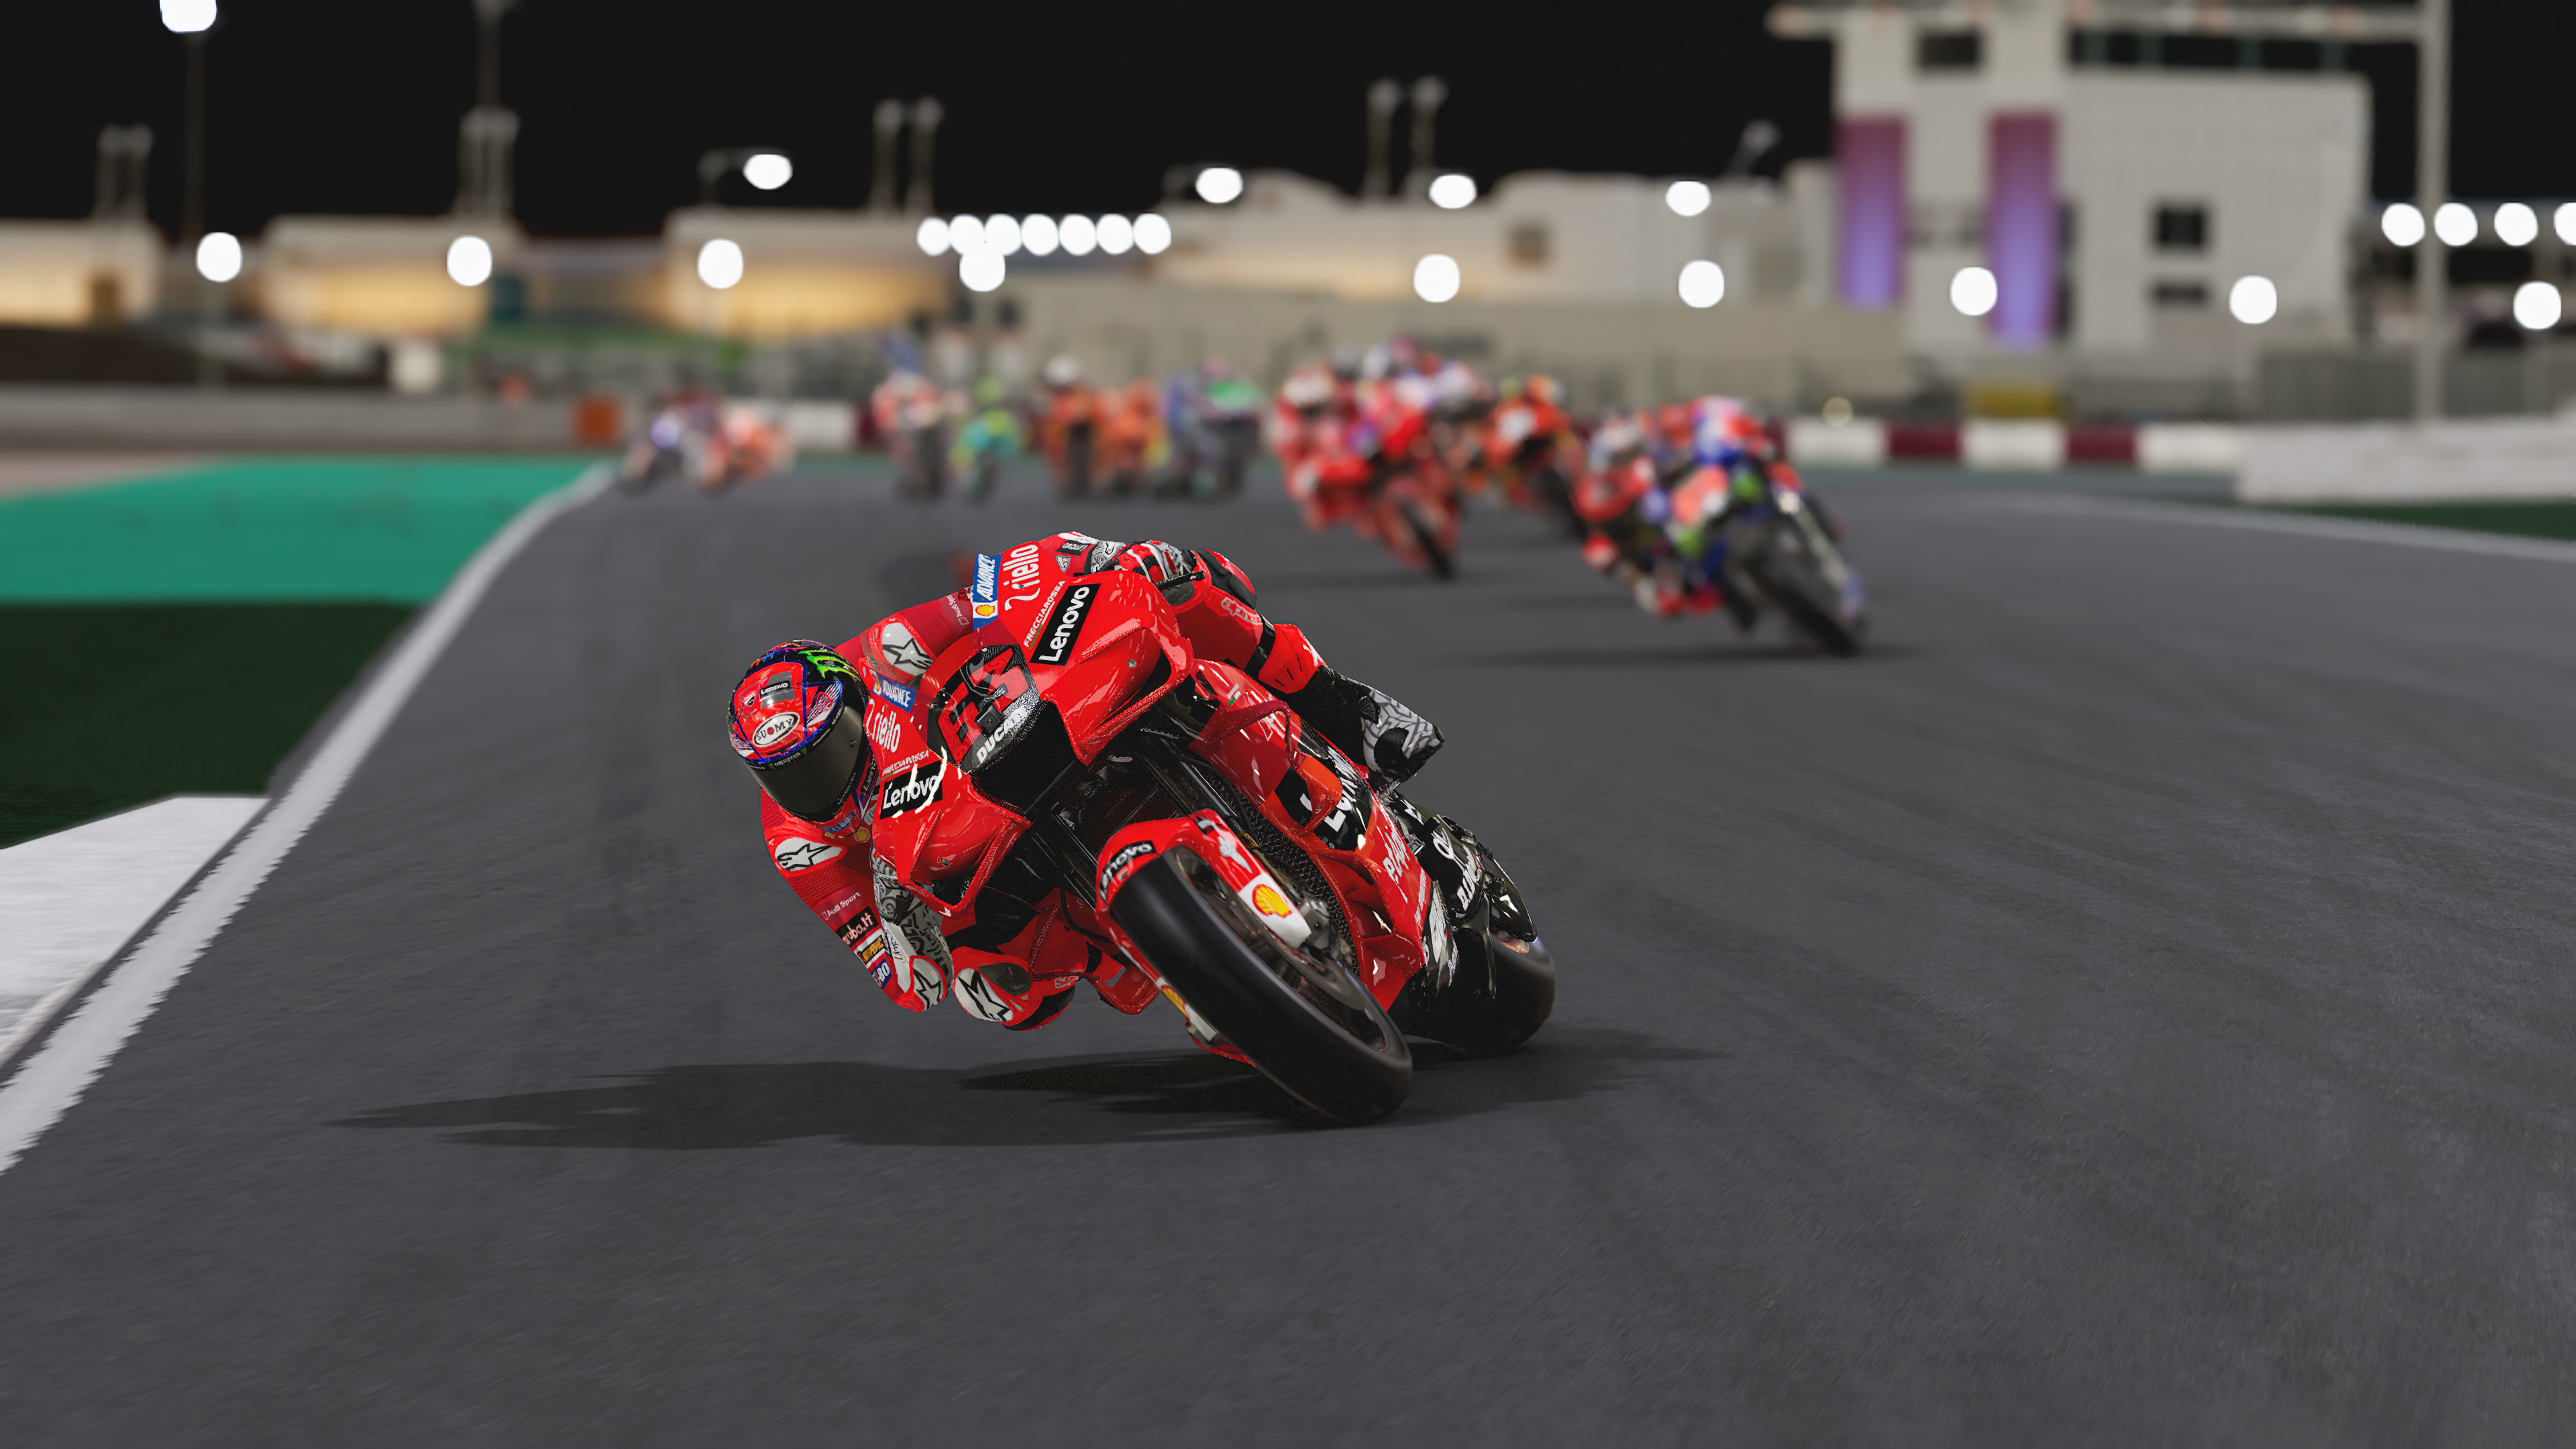 PS4 MotoGP 22